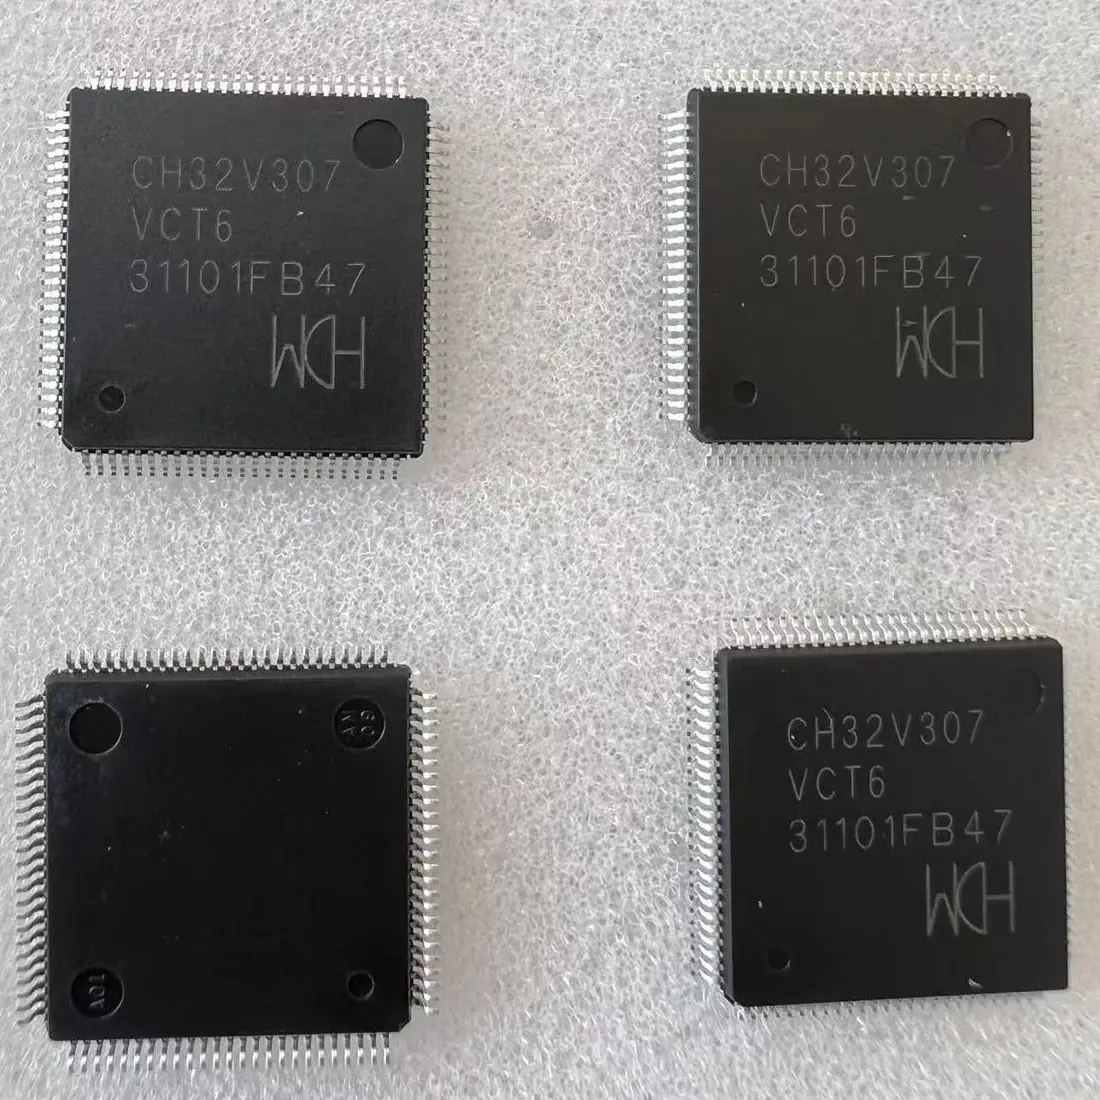 

100% New Original CH32V307VCT6 package LQFP-100 new original genuine microcontroller (MCU/MPU/SOC) IC chip